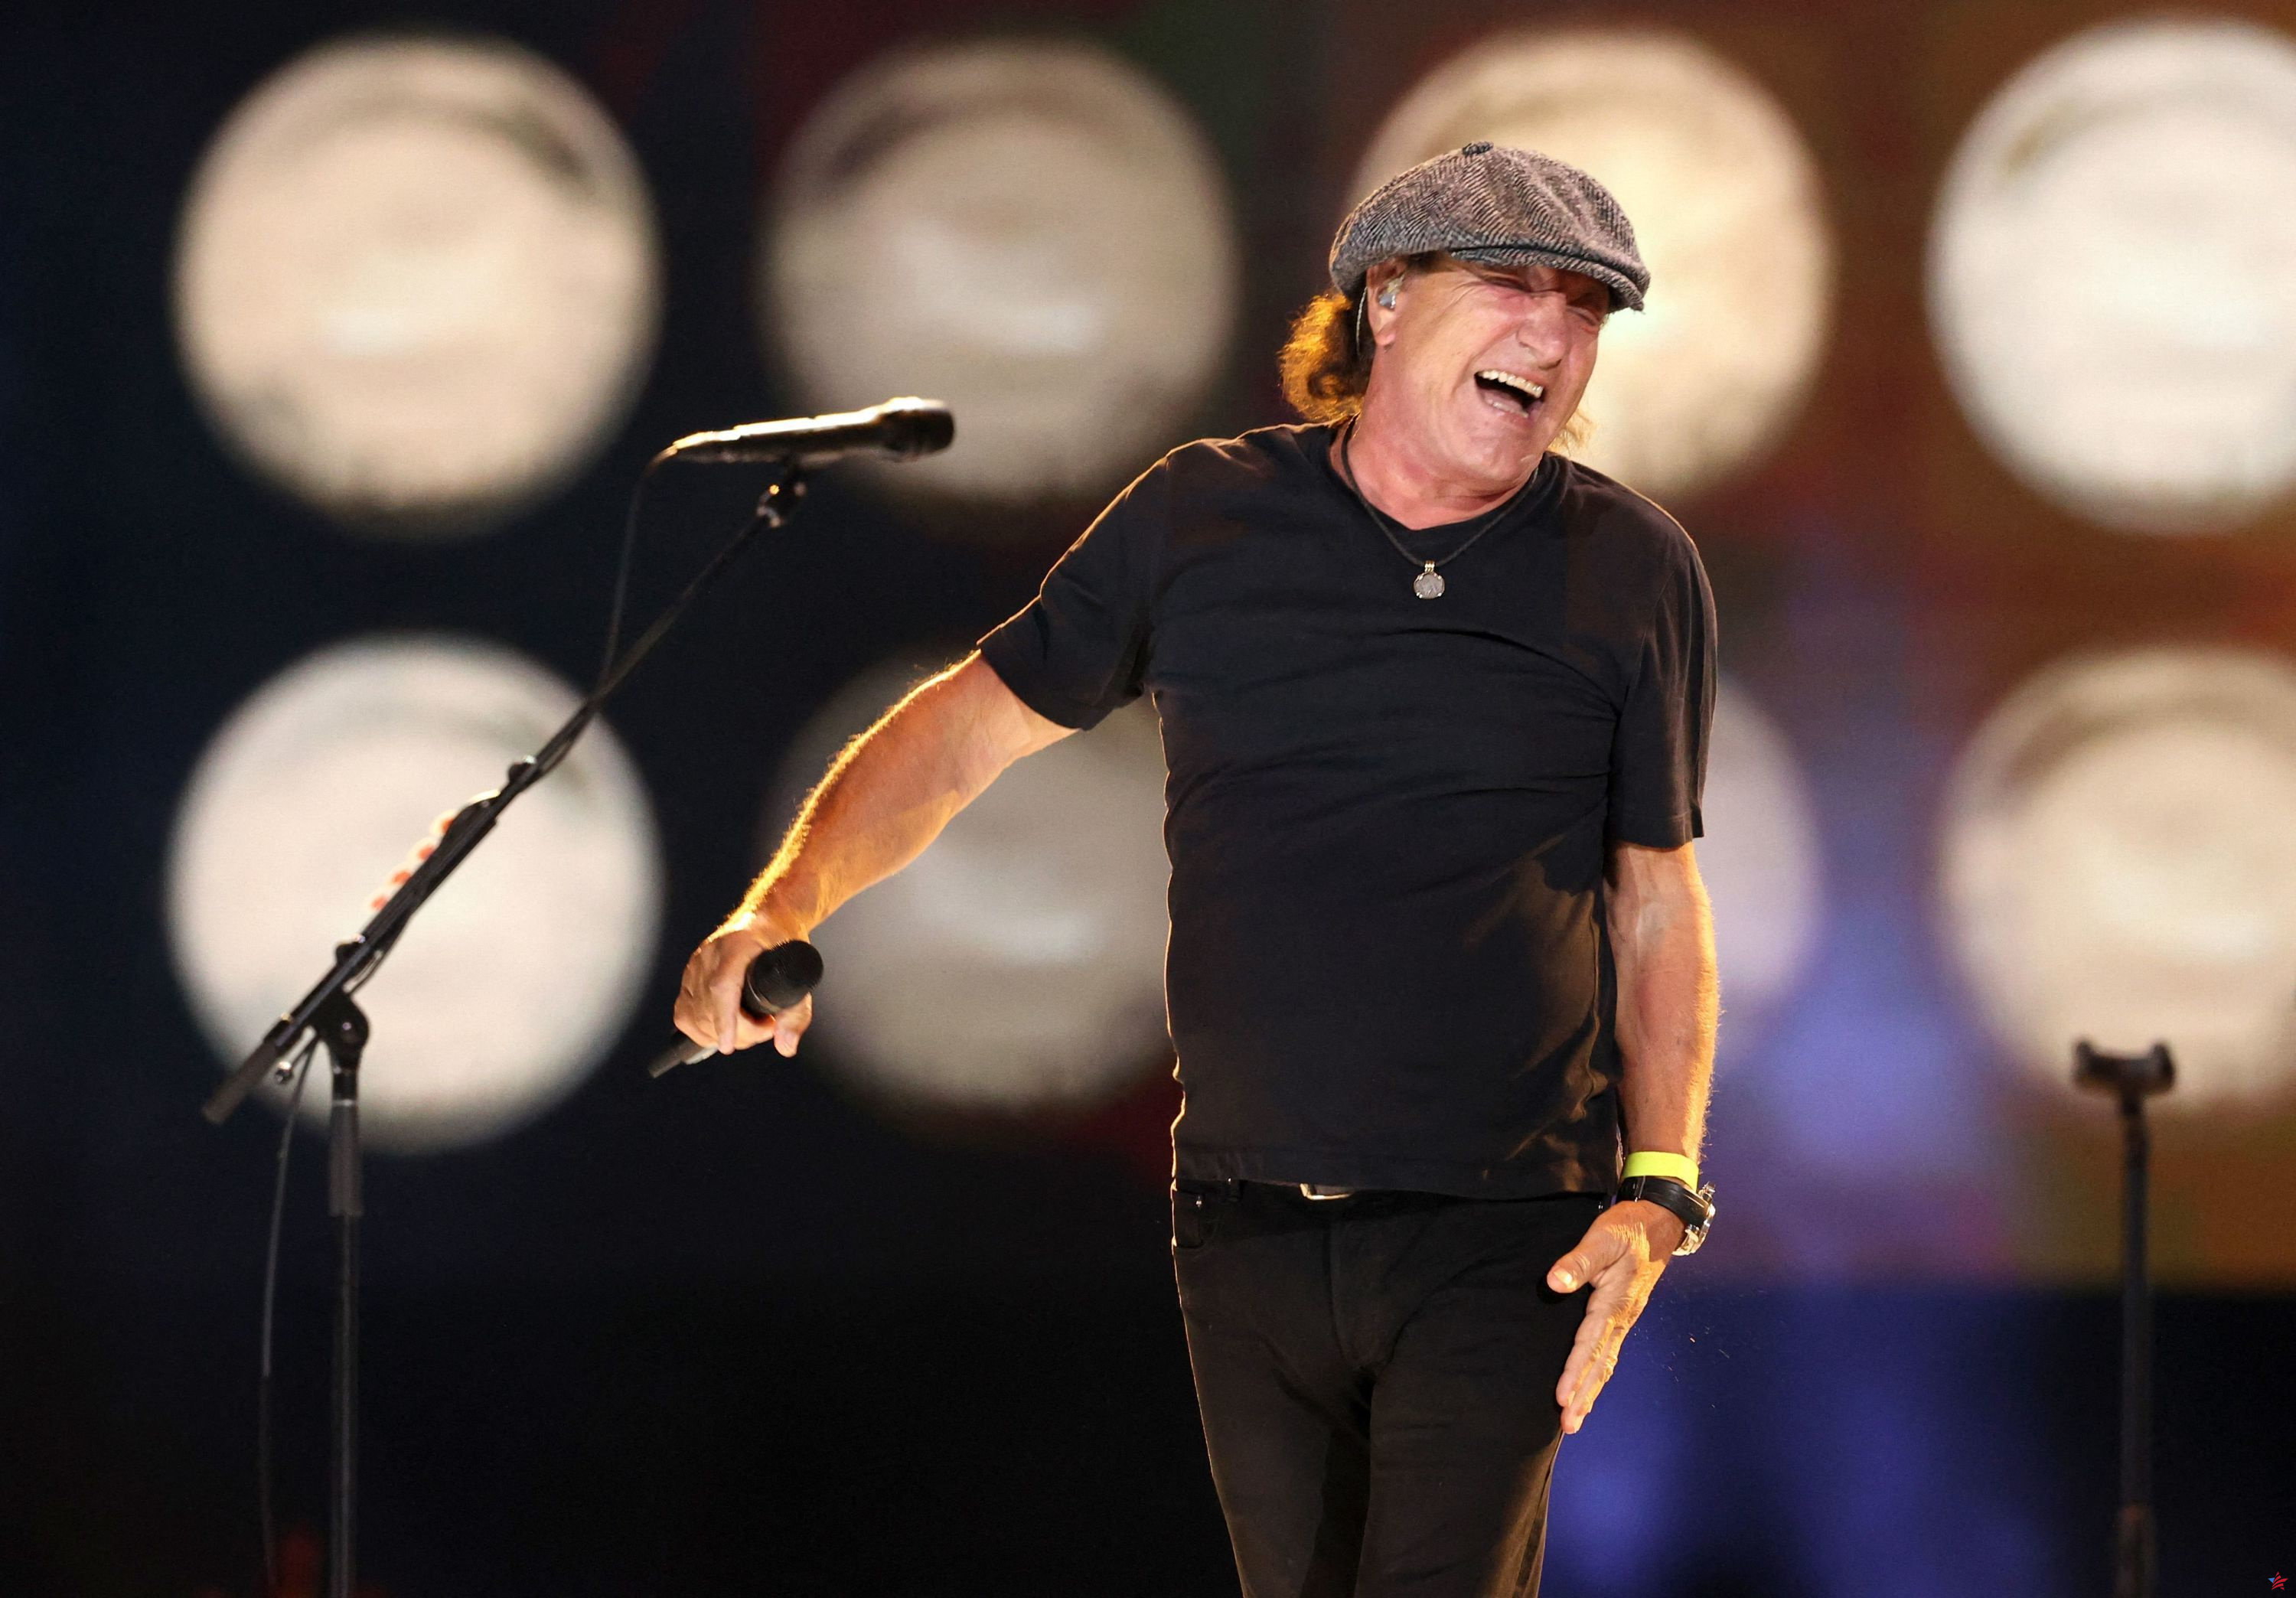 El grupo AC/DC regresa a Europa tras ocho años de ausencia